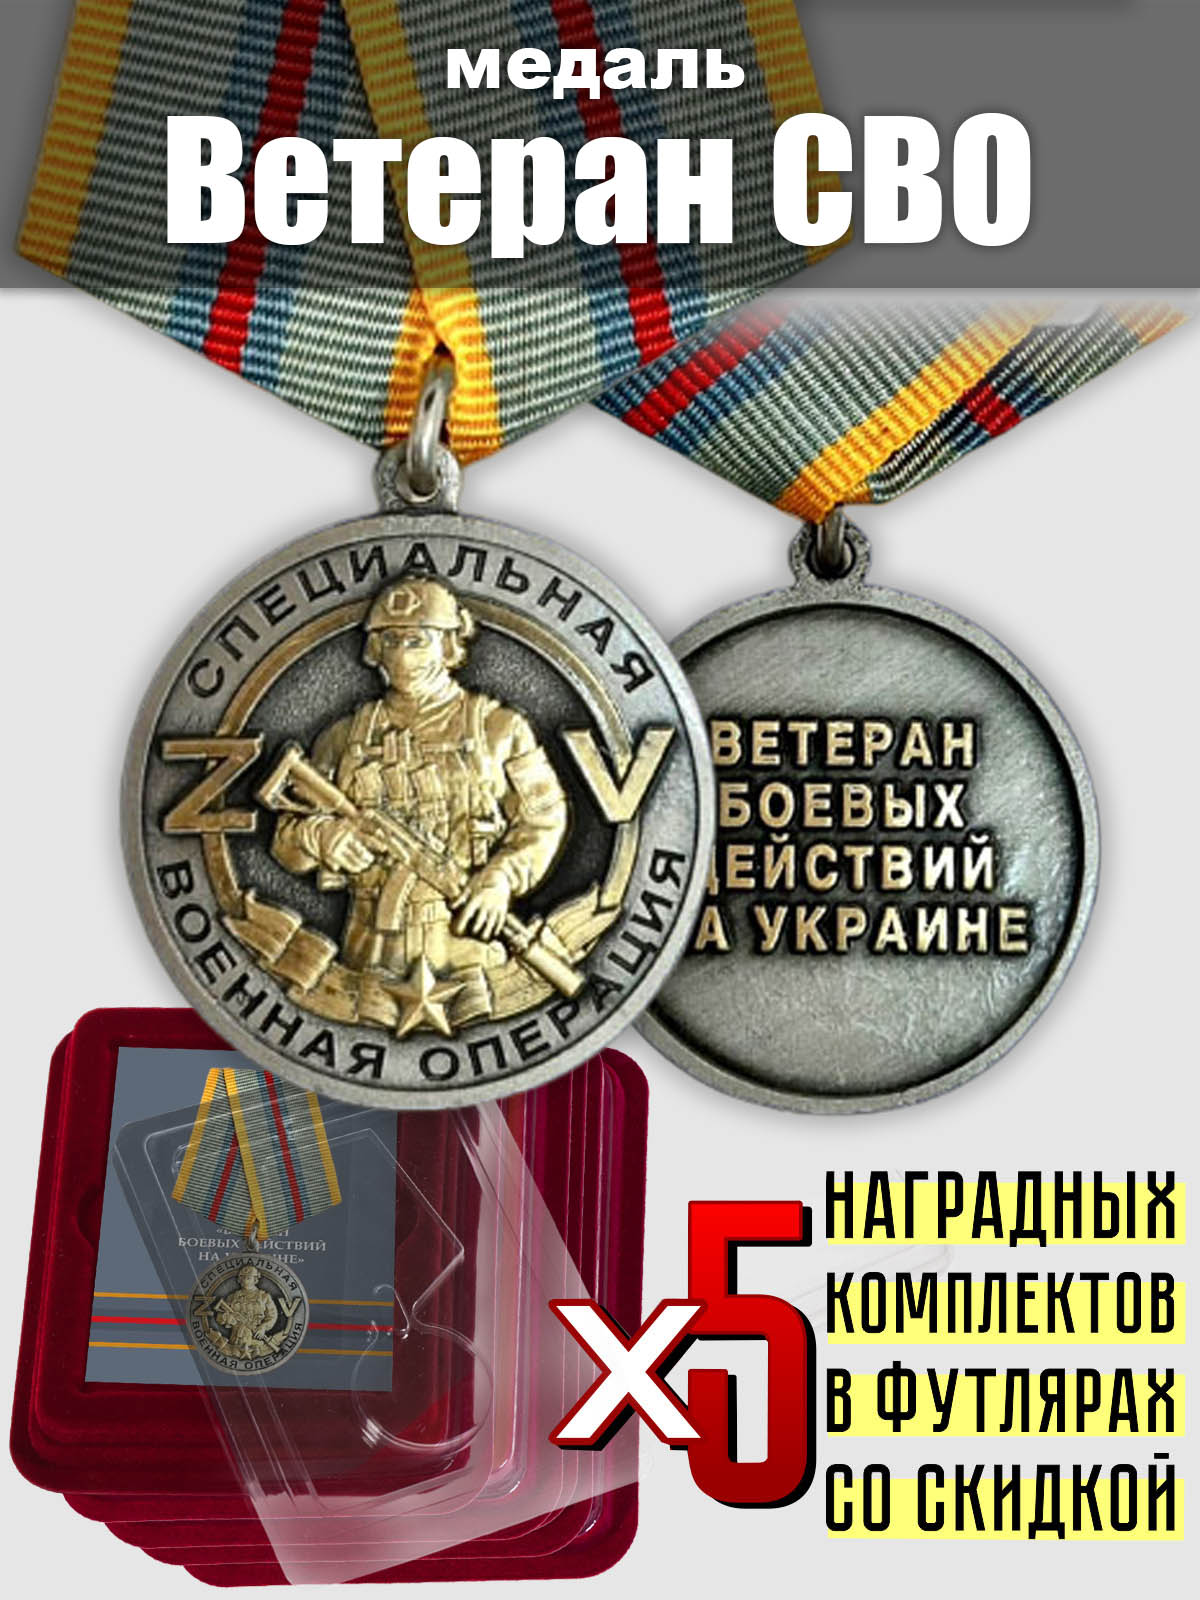 Набор медалей "Ветеран СВО" (5 шт.) 